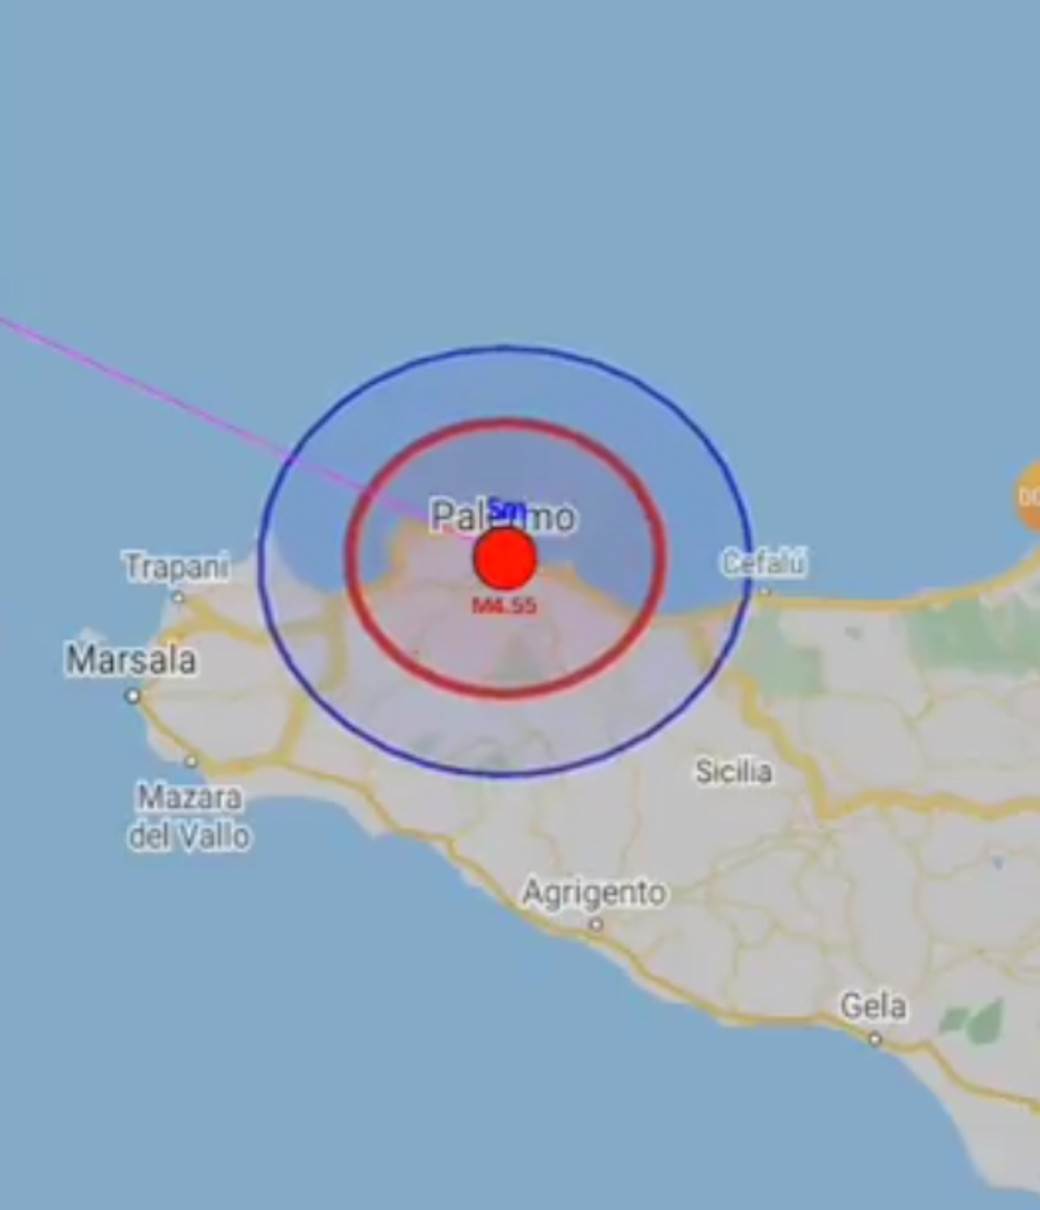  zemljotres pogodio siciliju 